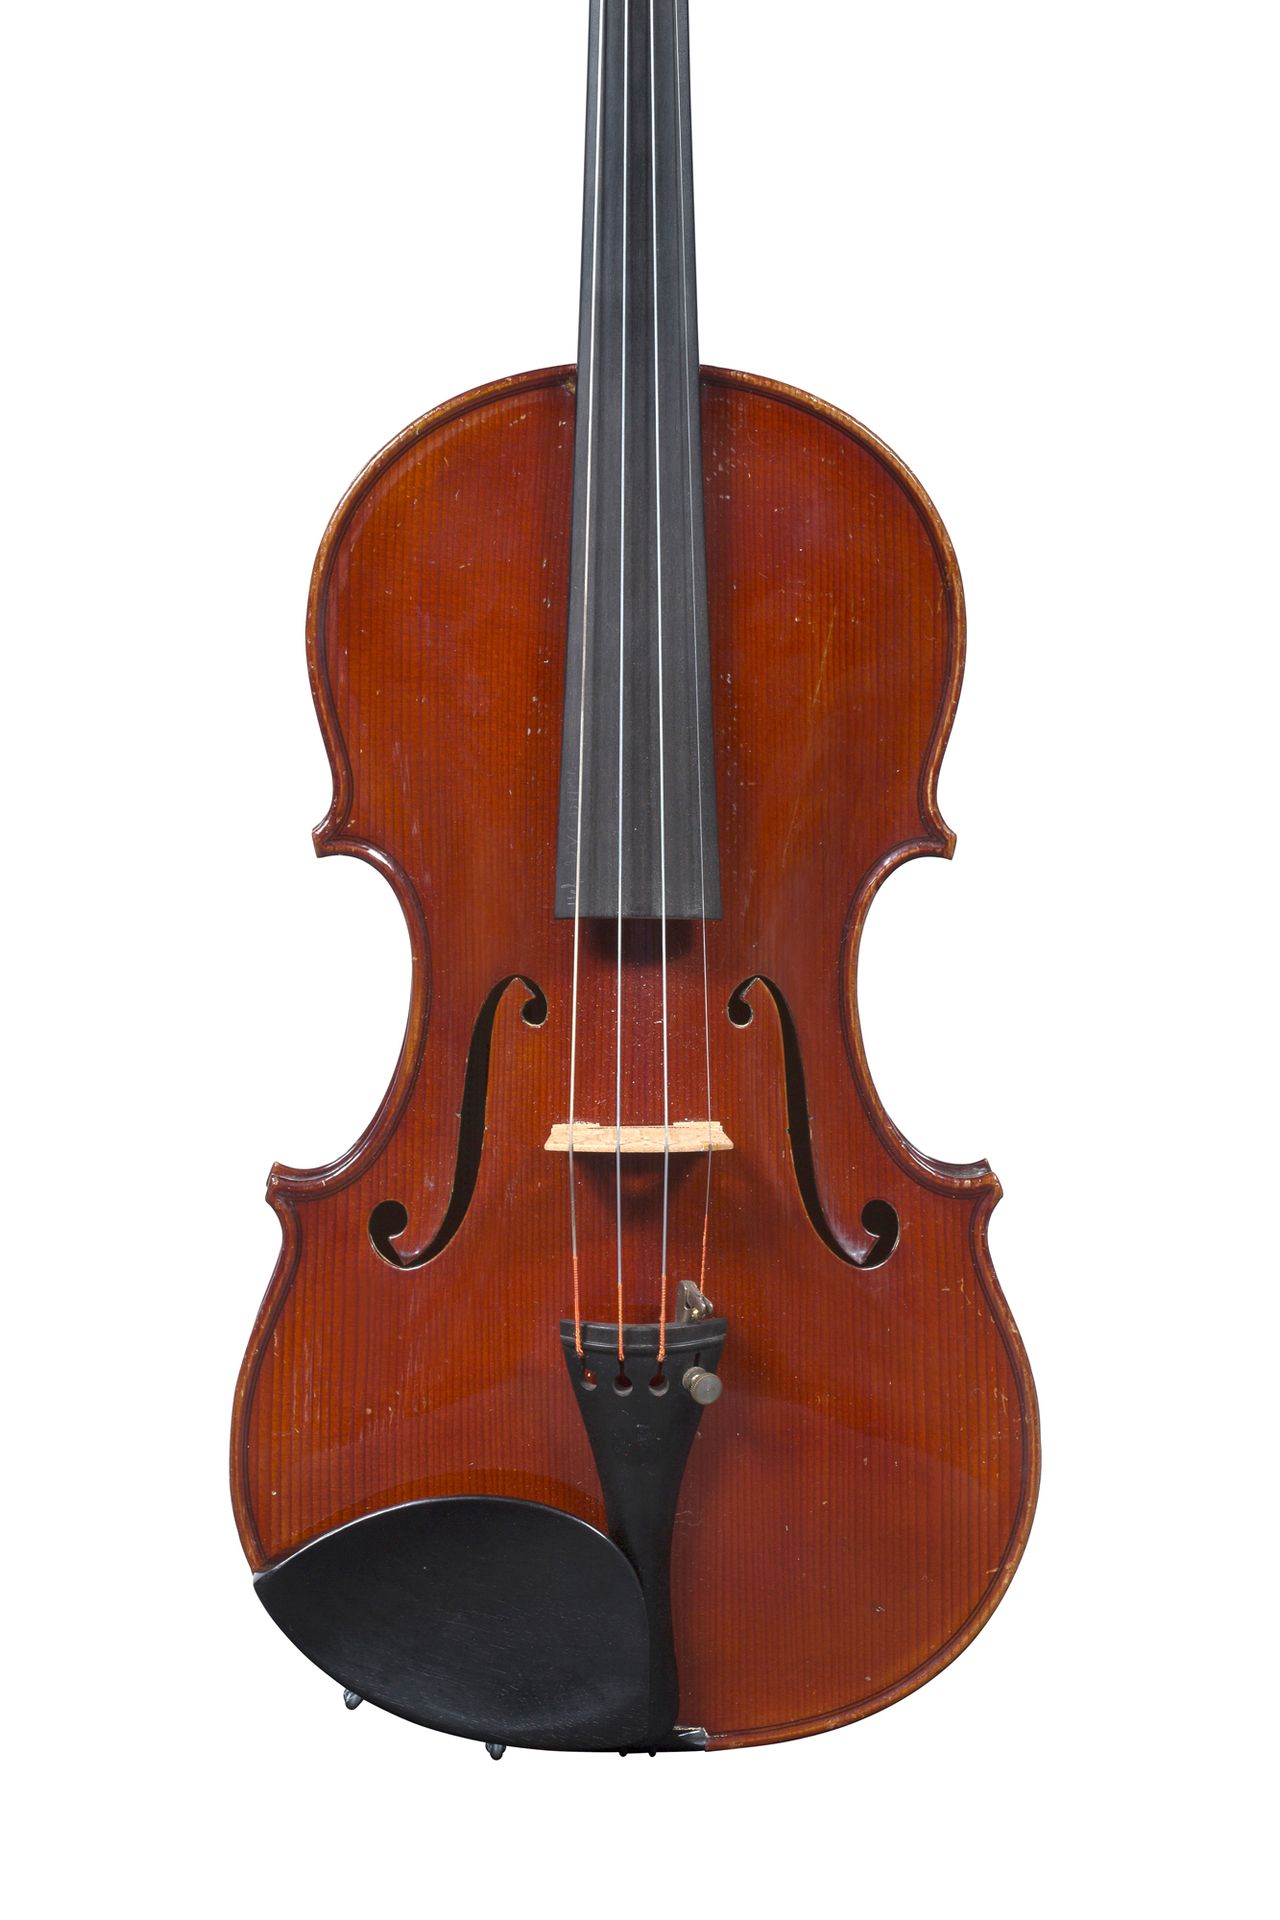 Null 查尔斯-克劳多特的小提琴
1920-30年左右由Amédée Dieudonné在Mirecourt制造。
状况良好
随时可以演奏 
背面有357毫米